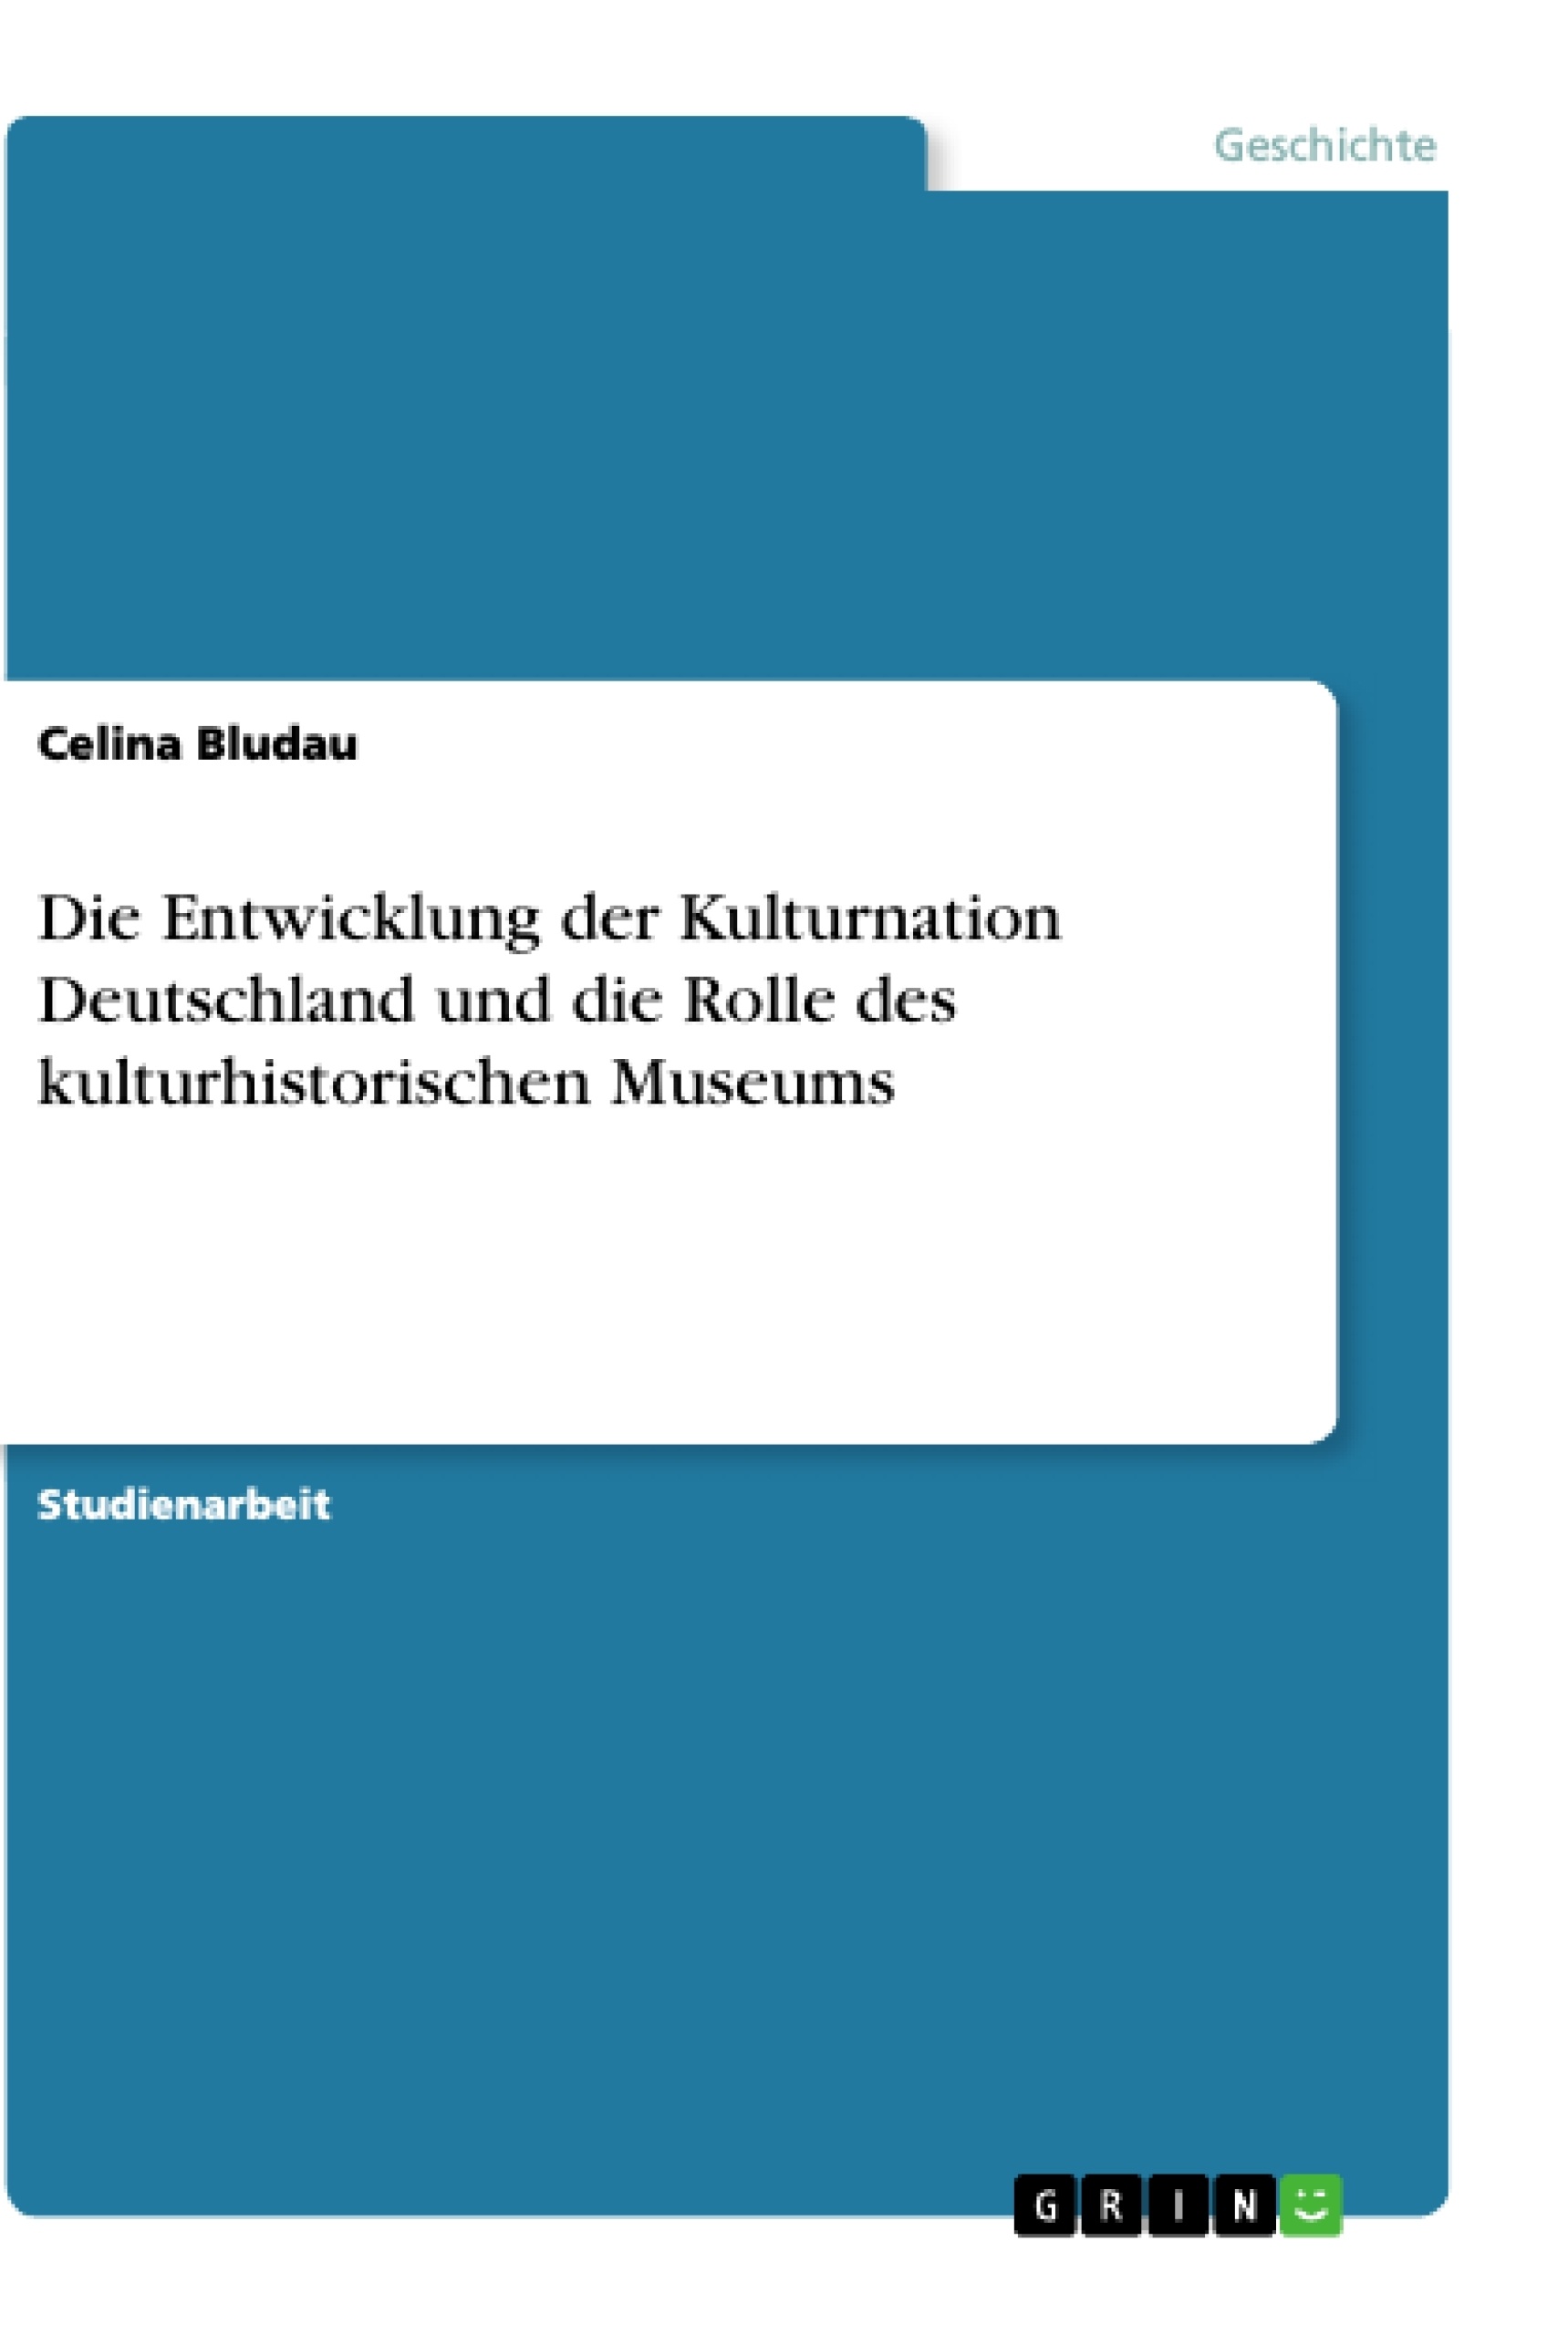 Título: Die Entwicklung der Kulturnation Deutschland und die Rolle des kulturhistorischen Museums